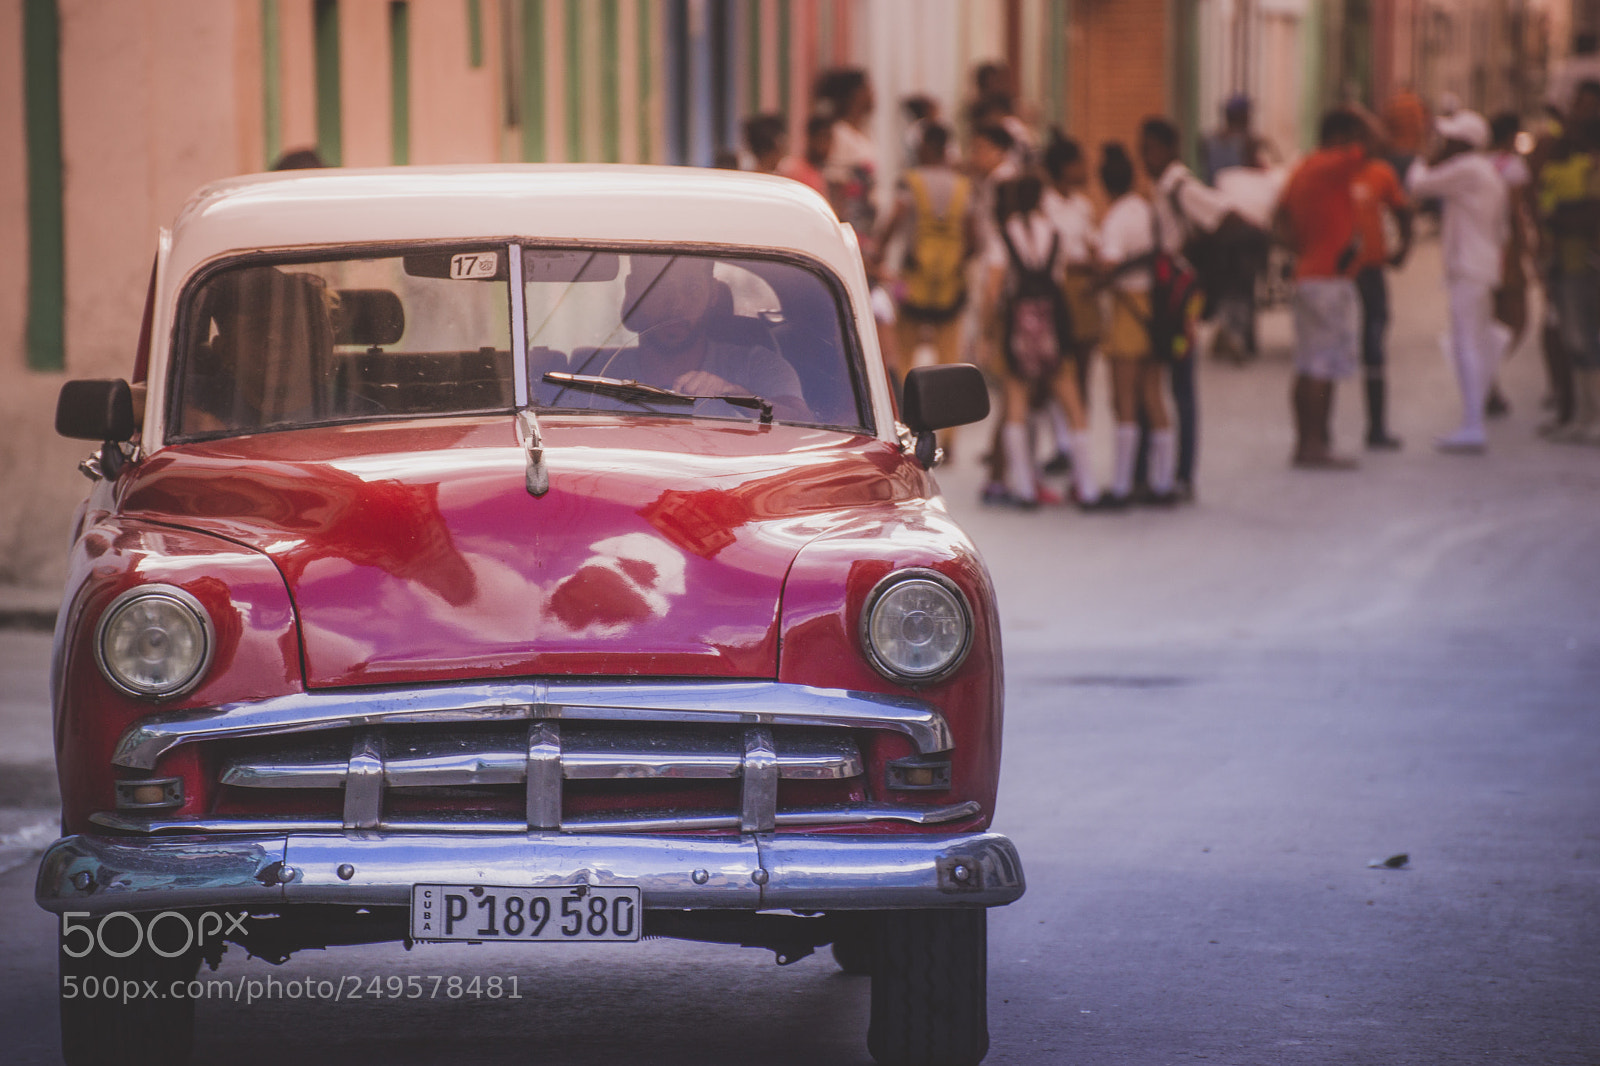 Sony a99 II sample photo. Havana car photography